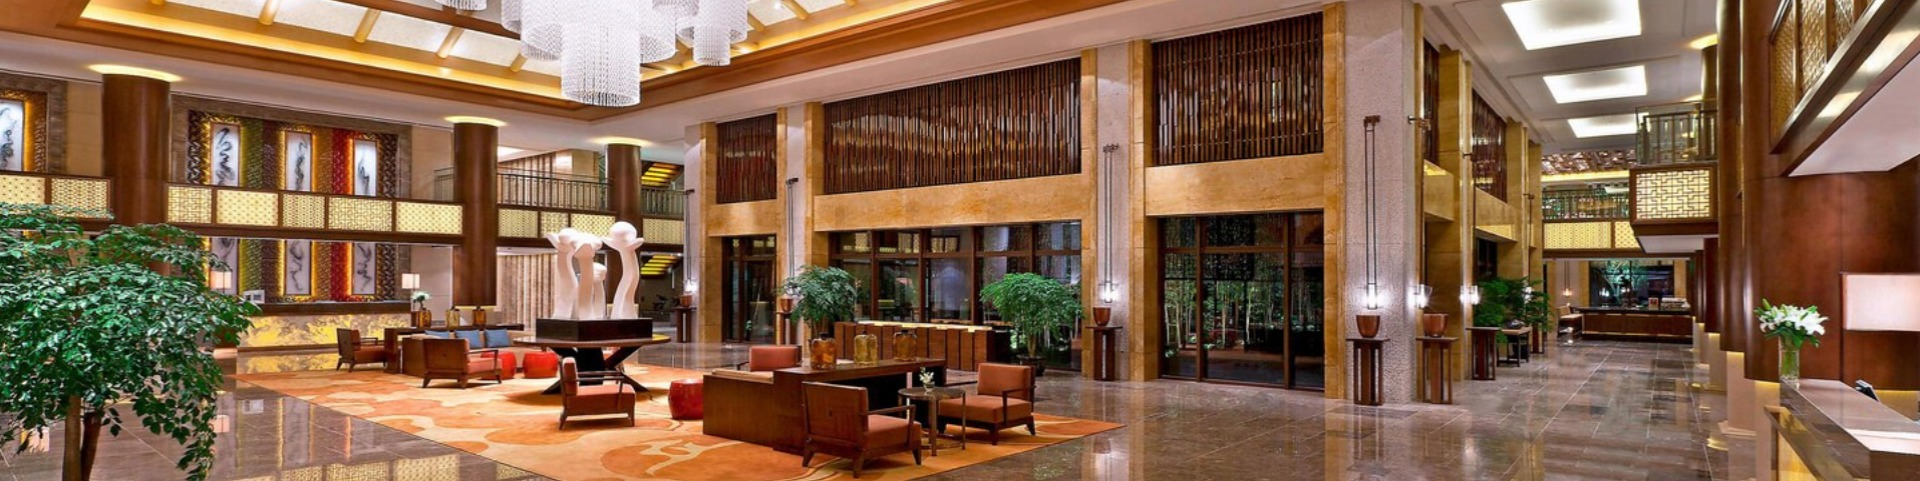 Hotels & Resorts